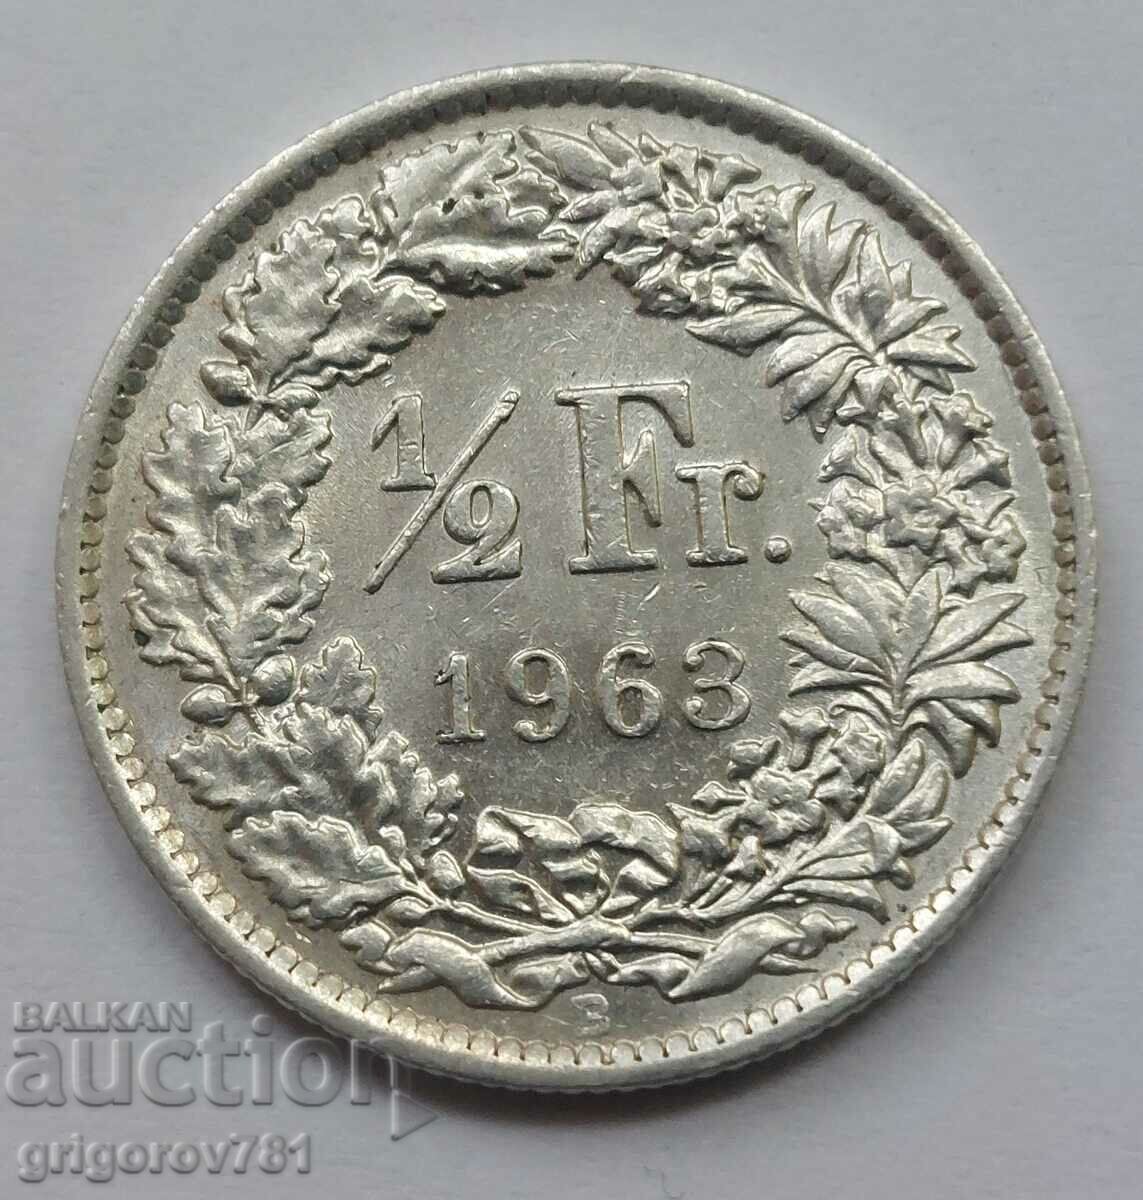 Ασημένιο φράγκο 1/2 Ελβετία 1963 Β - Ασημένιο νόμισμα #123